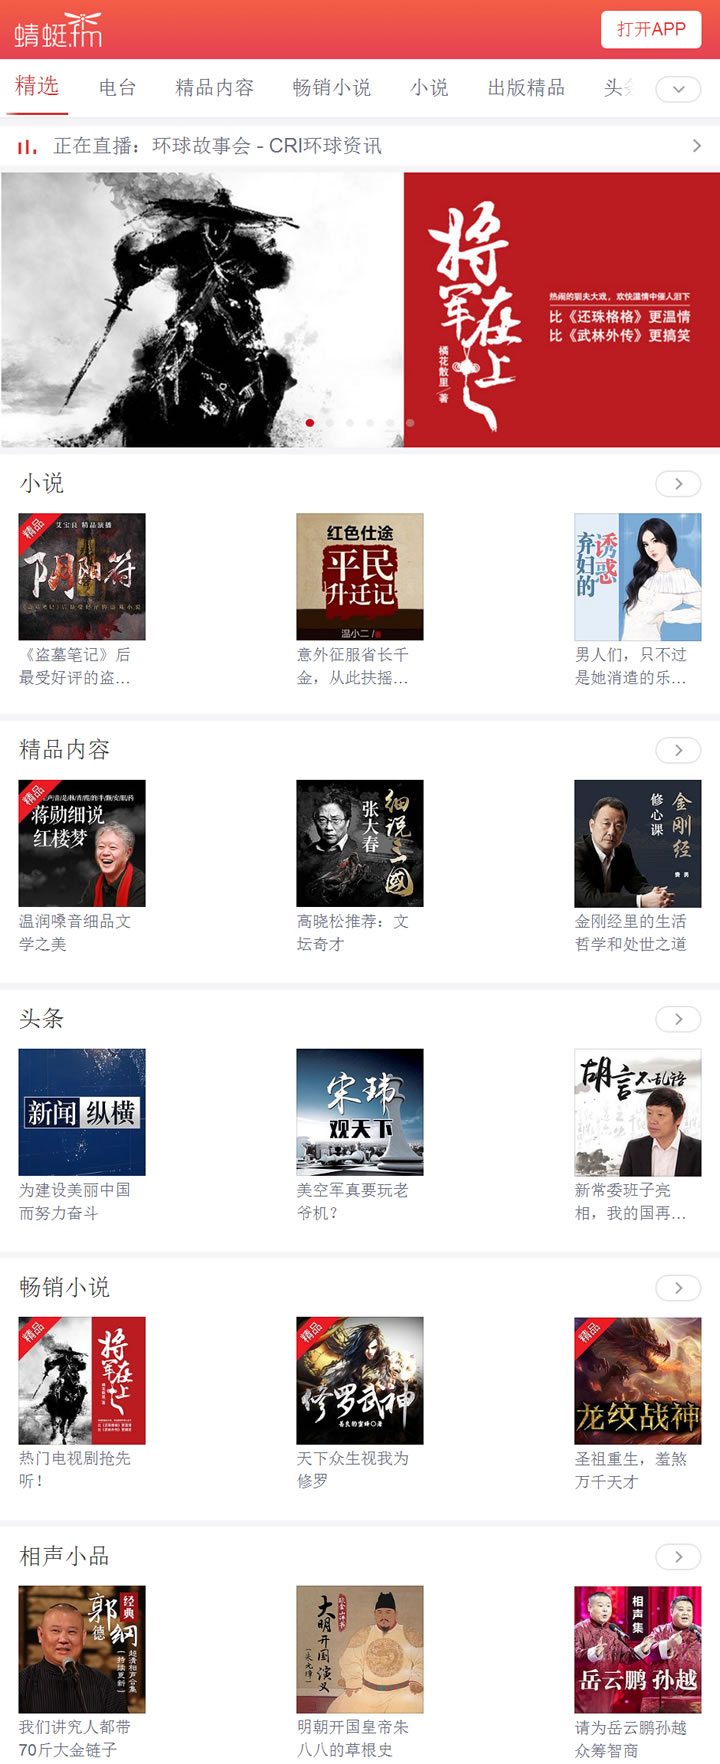 中国领先的在线音频媒体平台：蜻蜓FM